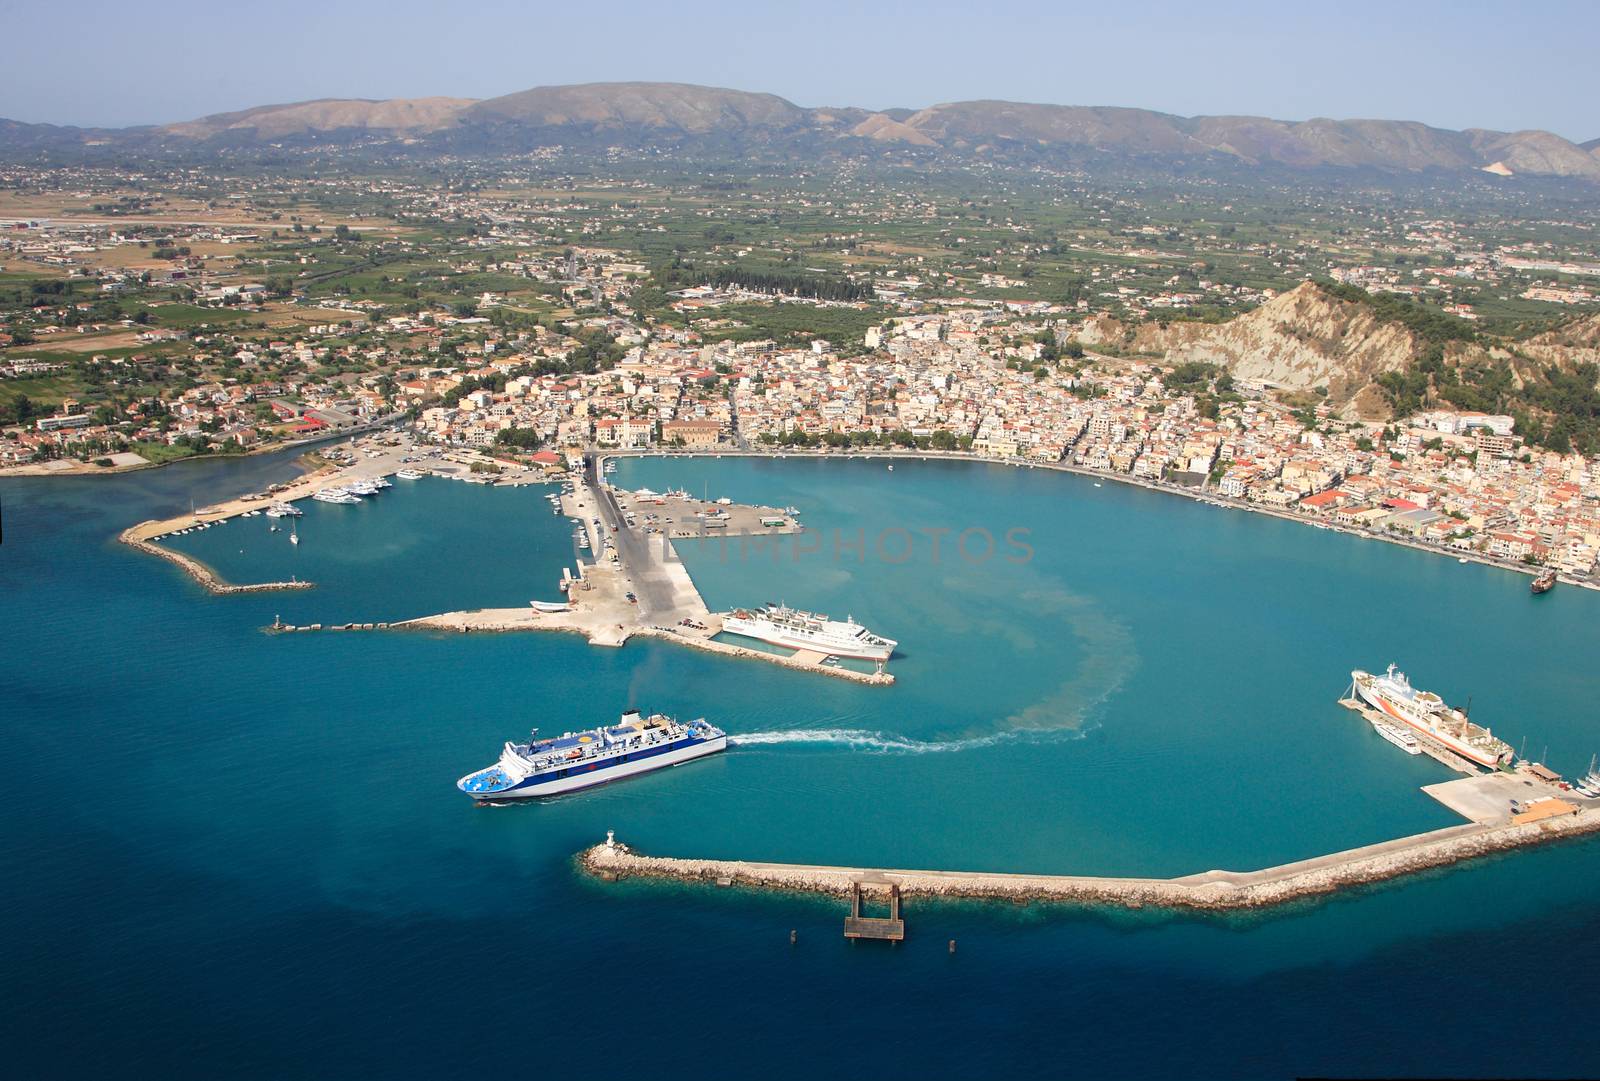 Aerial view on Zakynthos island Greece - Zante town